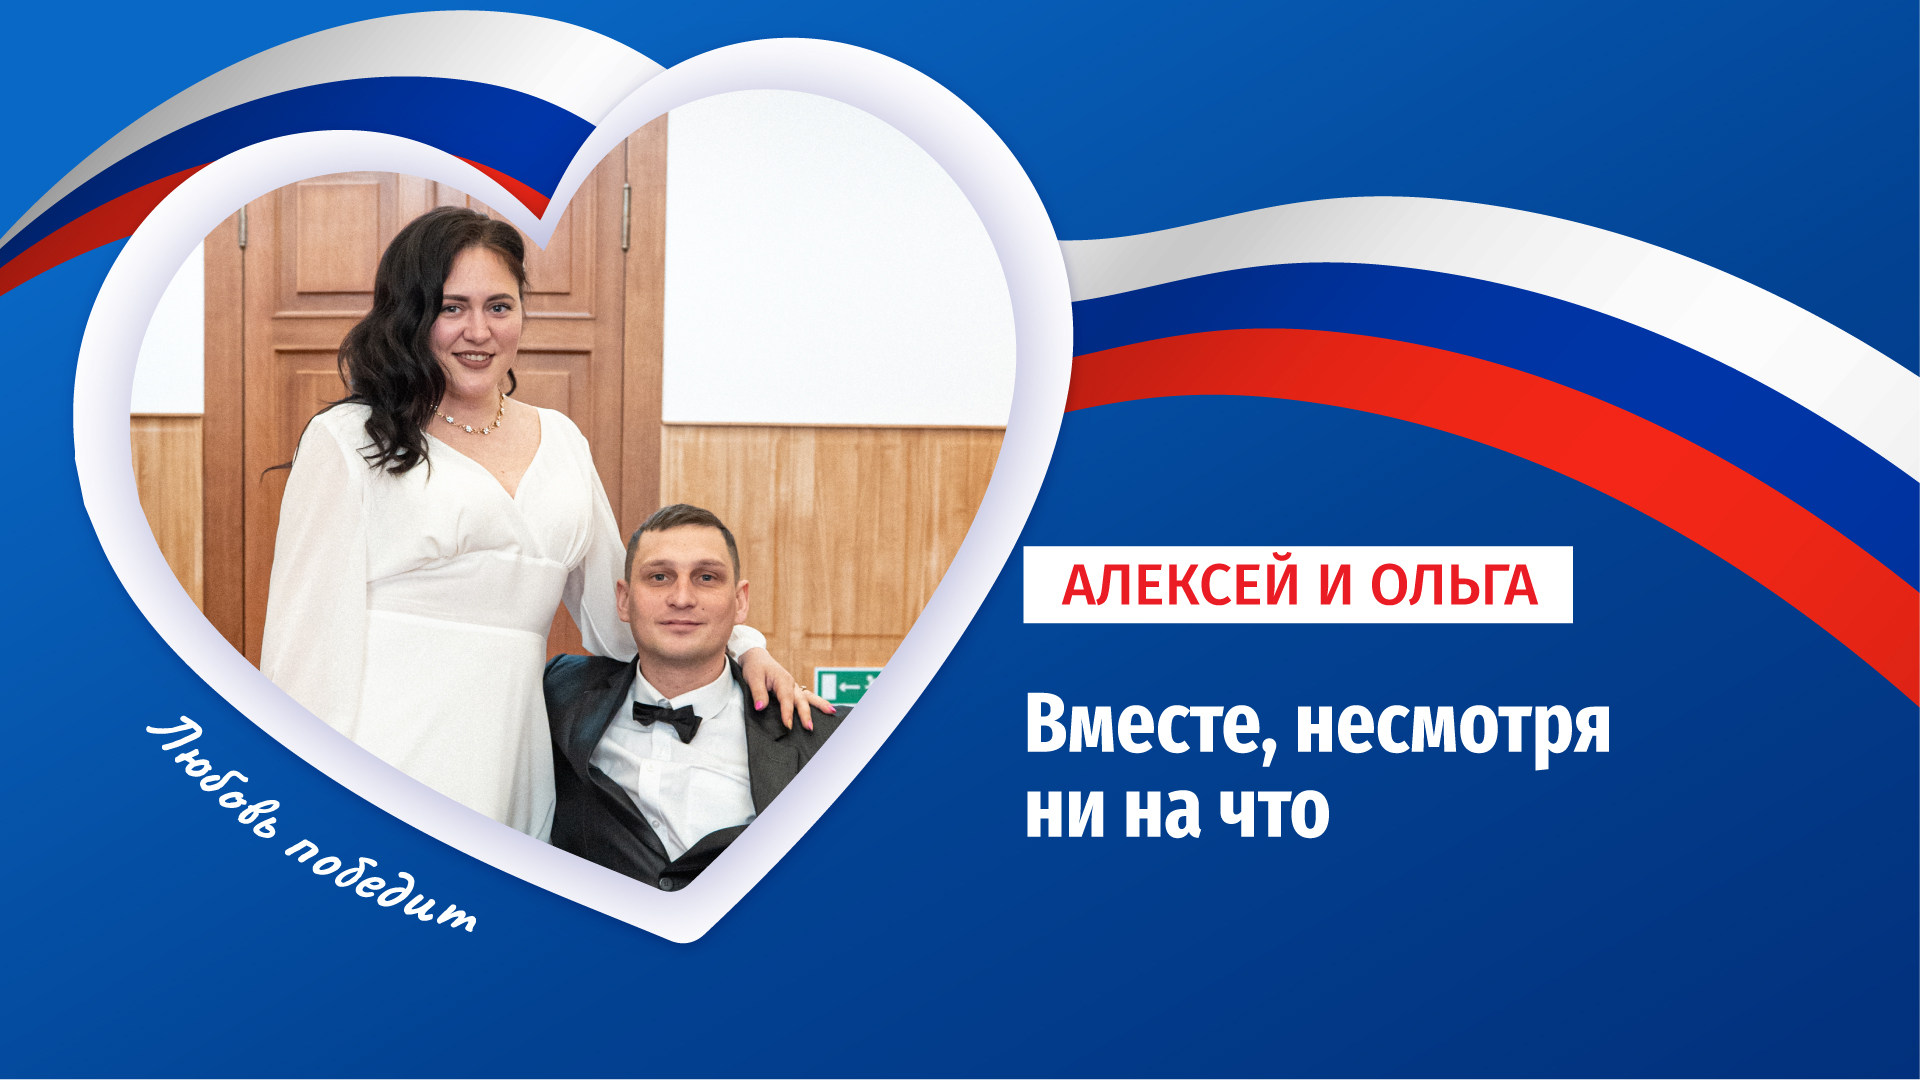 Не бросила после ранения: история любви Алексея и Ольги из Луганска